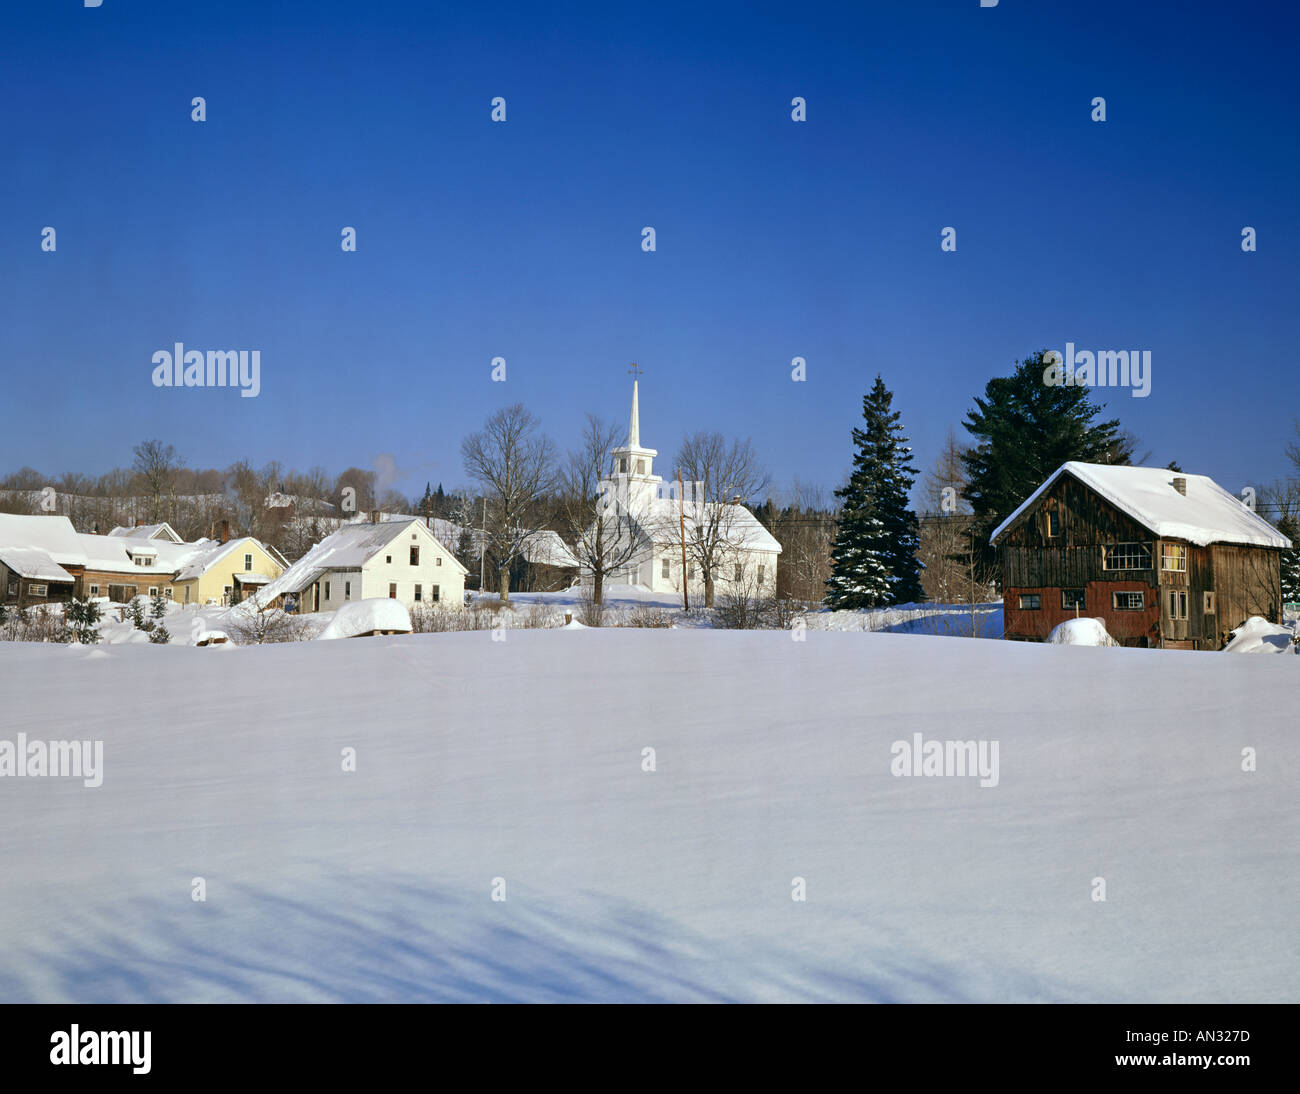 Coperta di neve Vermont USA village durante il periodo invernale Foto Stock